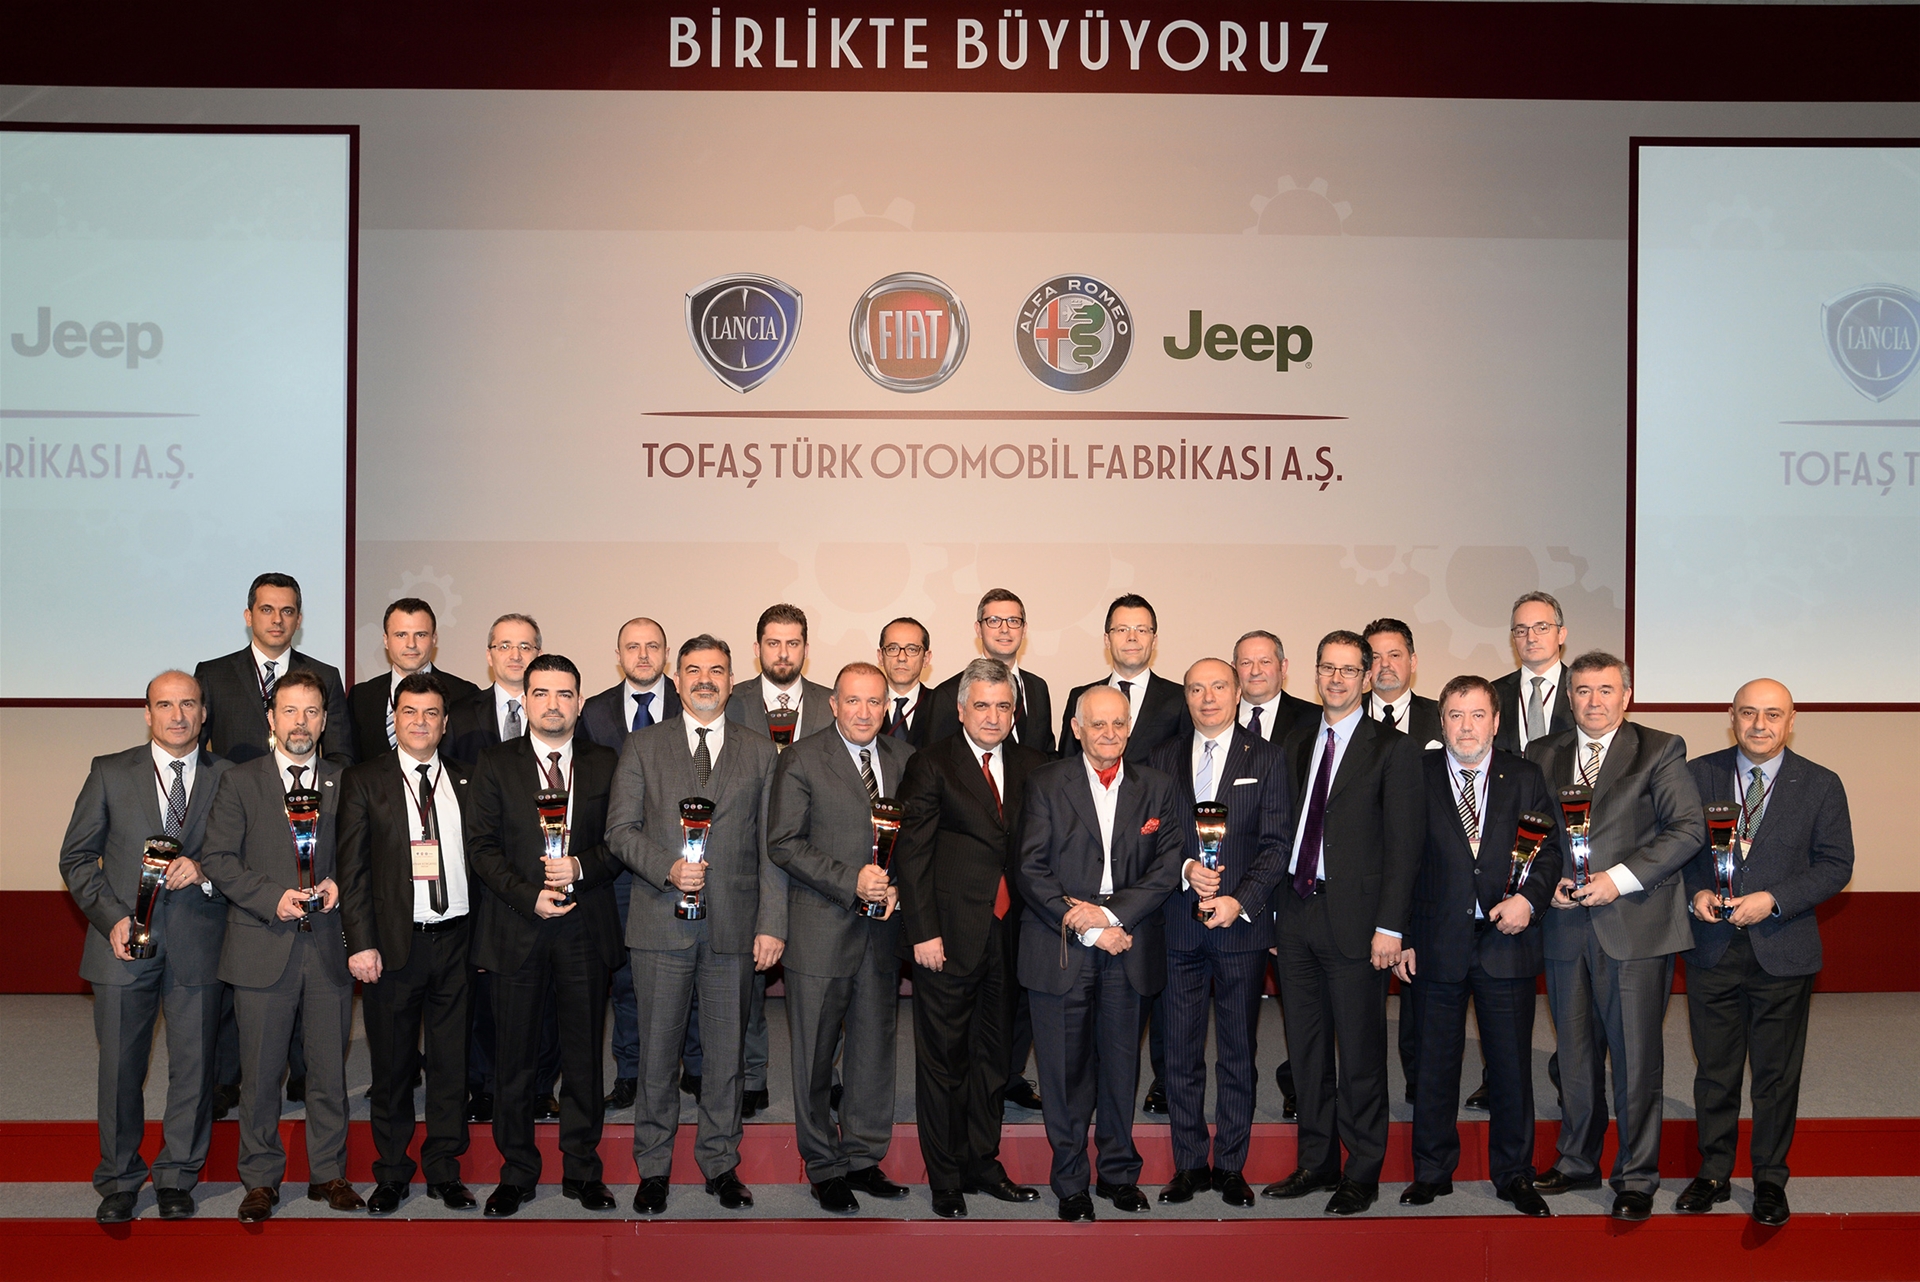 2015 Bursa'da TOFAŞ Kitabı tanıtımı sonrasında TOFAŞ Yöneticileri ile